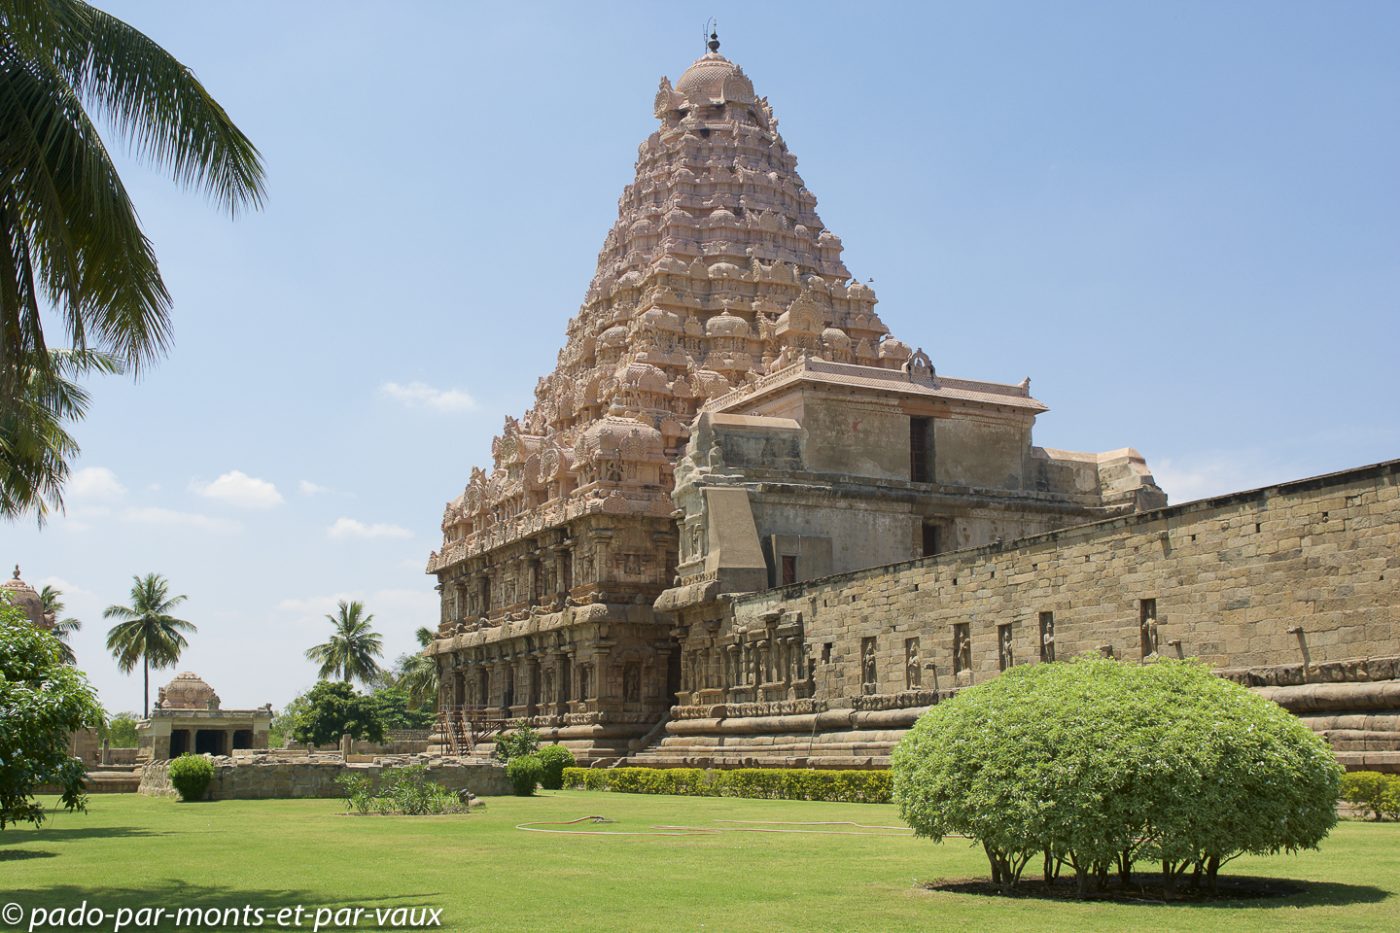  Temple de Pragatishwara